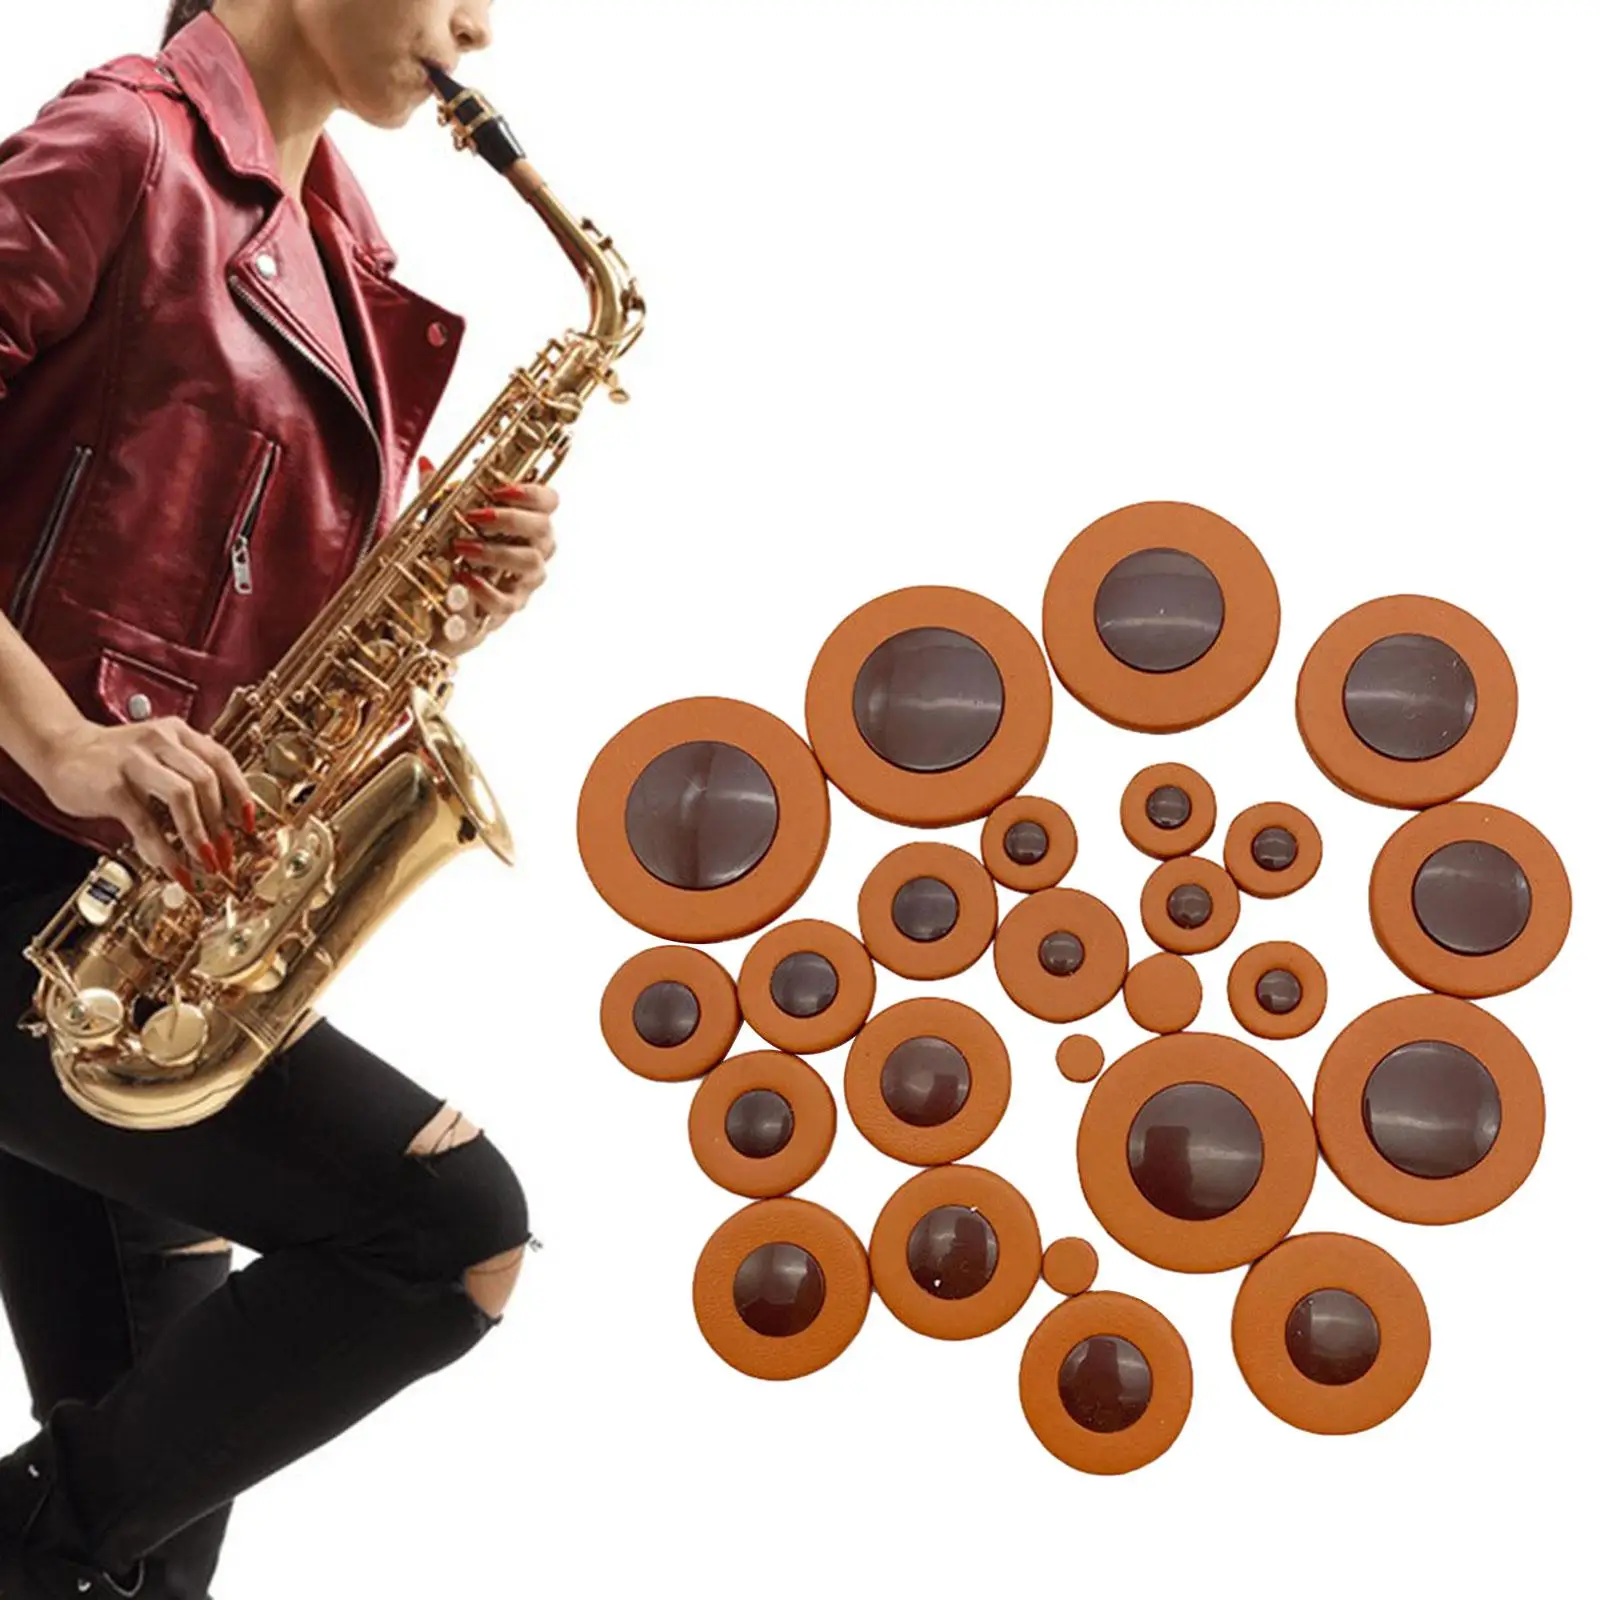 

Кожаные накладки для саксофона, профессиональные универсальные, 8,5 мм, 25 шт.